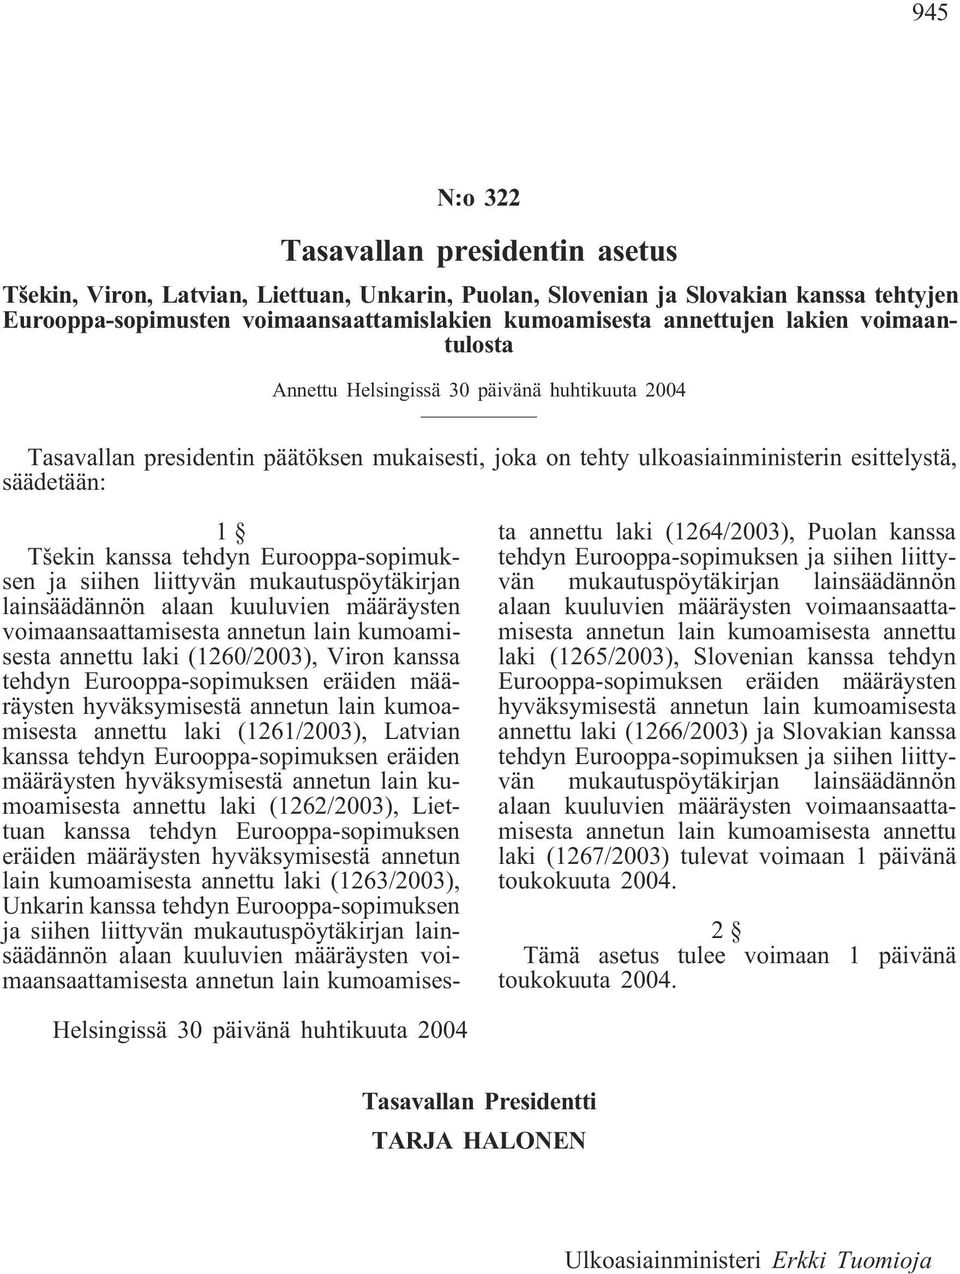 Eurooppa-sopimuksen ja siihen liittyvän mukautuspöytäkirjan lainsäädännön alaan kuuluvien määräysten voimaansaattamisesta annetun lain kumoamisesta annettu laki (1260/2003), Viron kanssa tehdyn